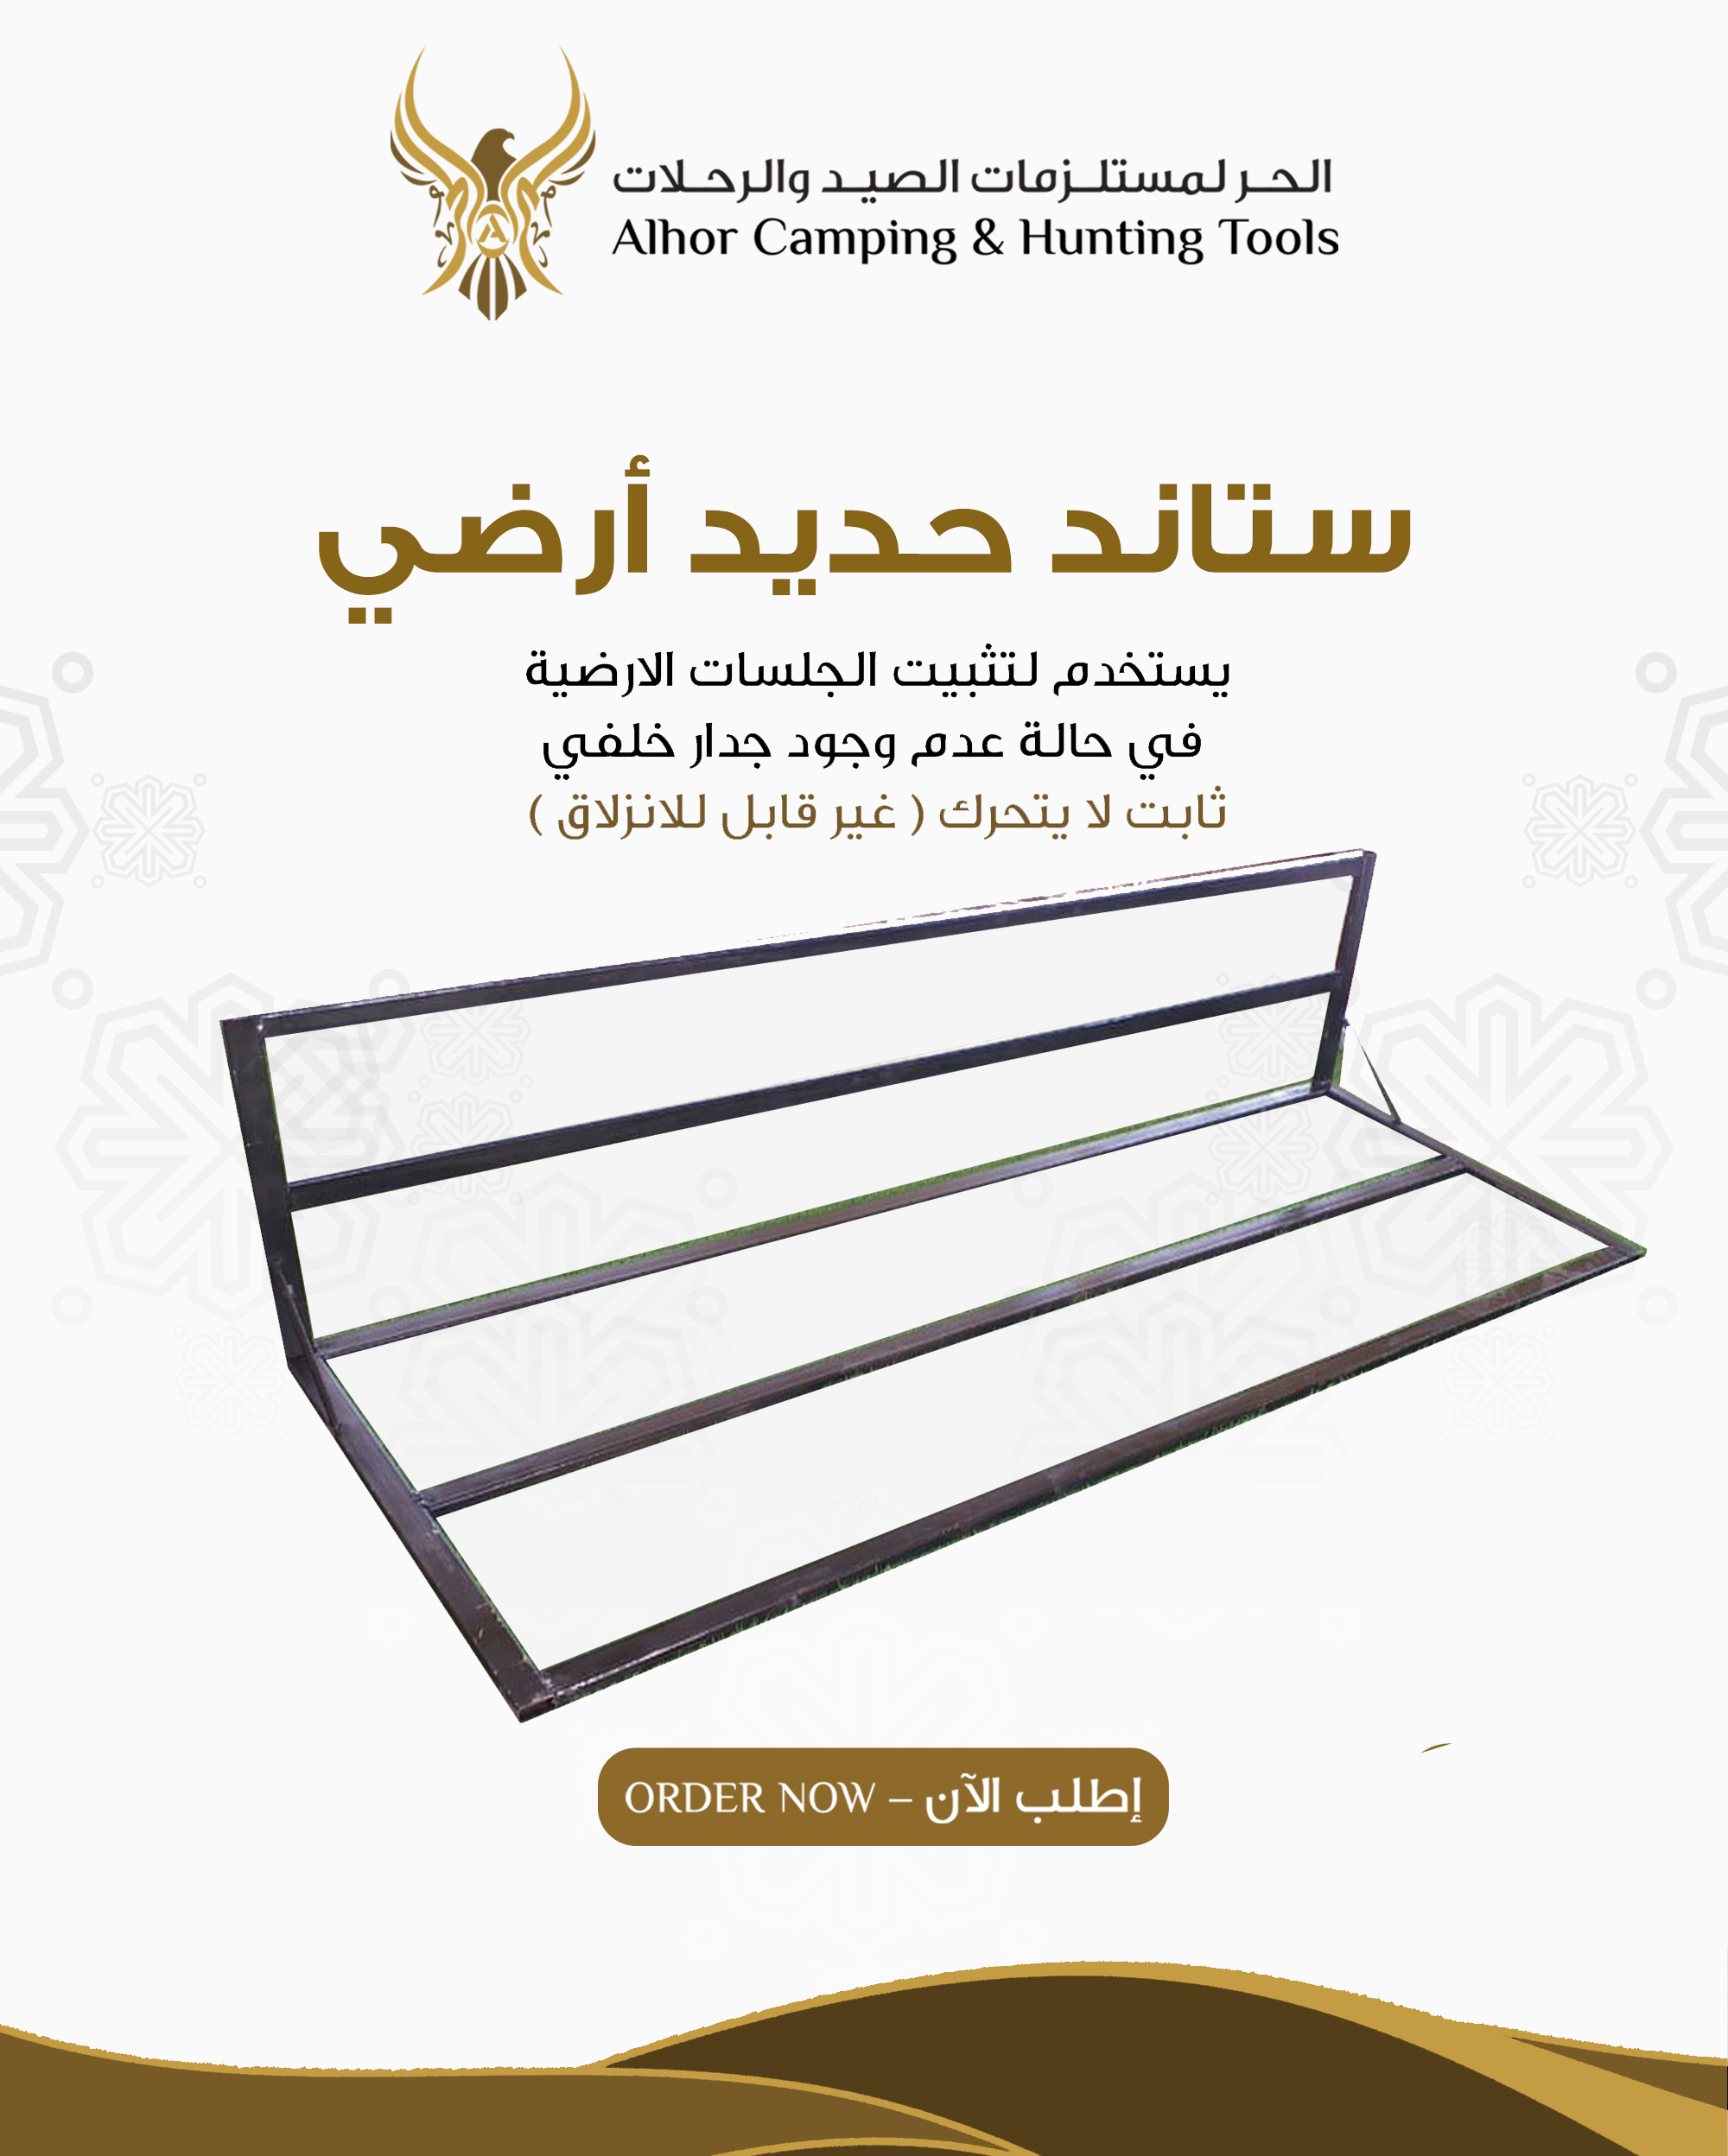 Shop  الحر لمستلزمات الصيد والرحلات - Alhor Camping & Hunting Tools